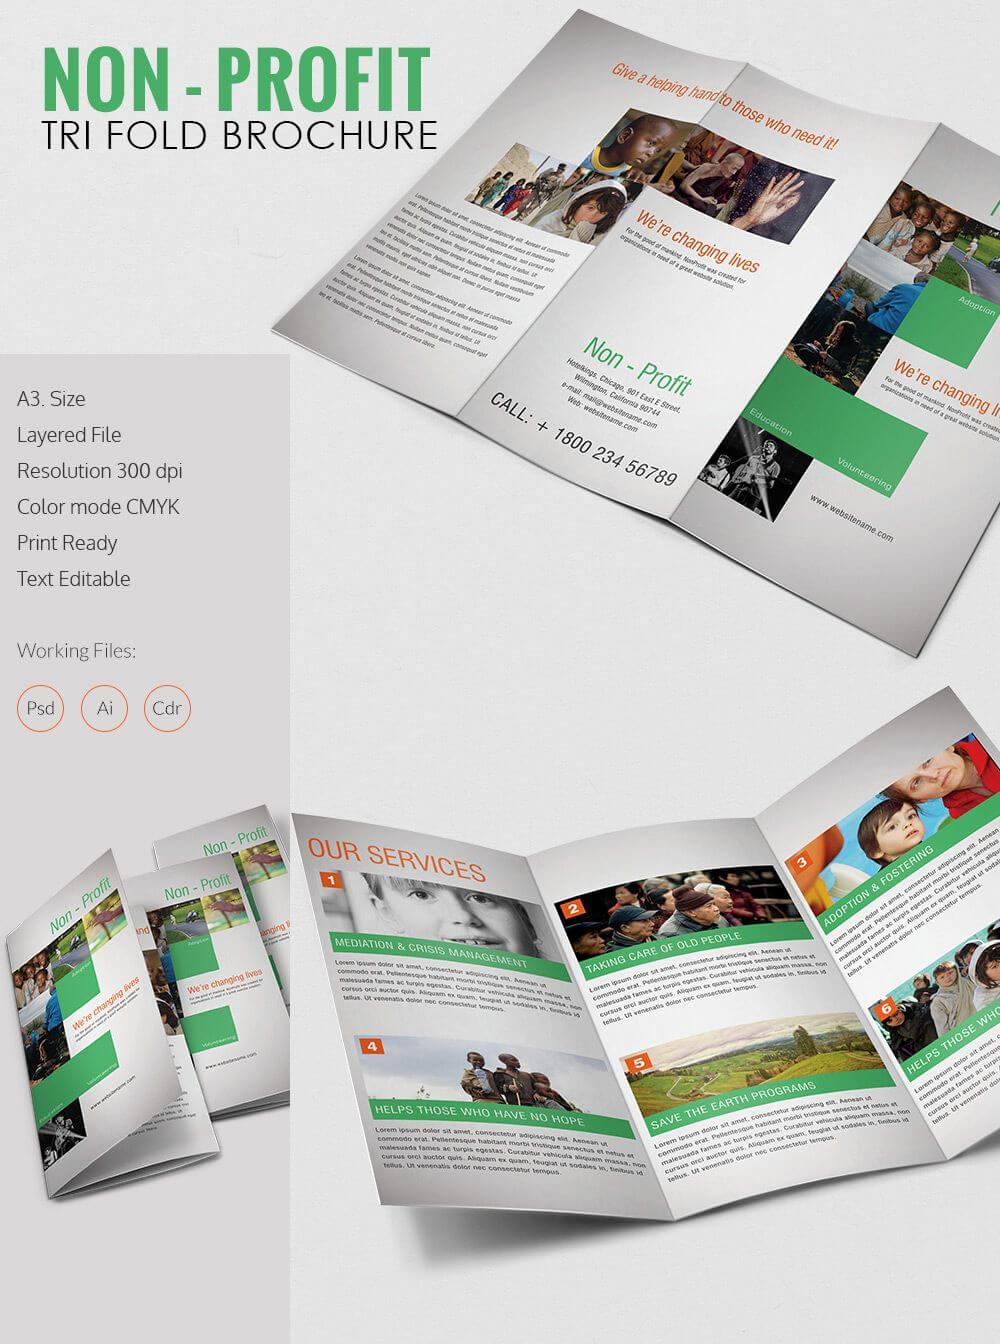 Tri Fold Brochure Template – 43+ Free Word, Pdf, Psd, Eps For 3 Fold Brochure Template Free Download